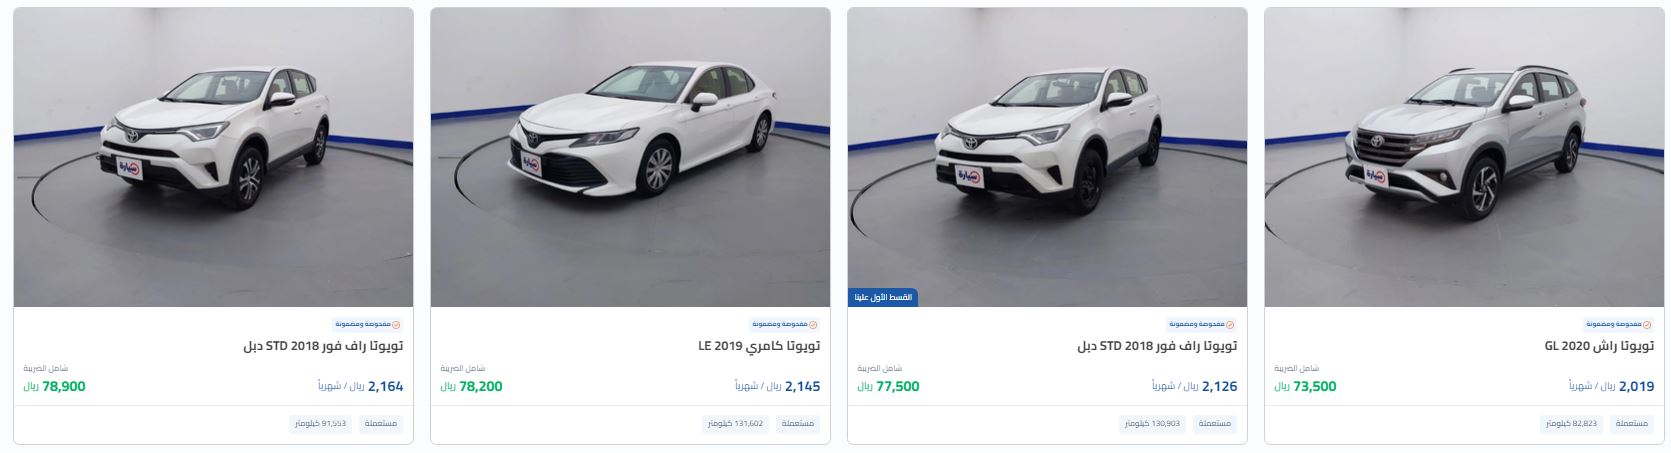 أرخص خصومات السيارات تويوتا المستعملة Saudi